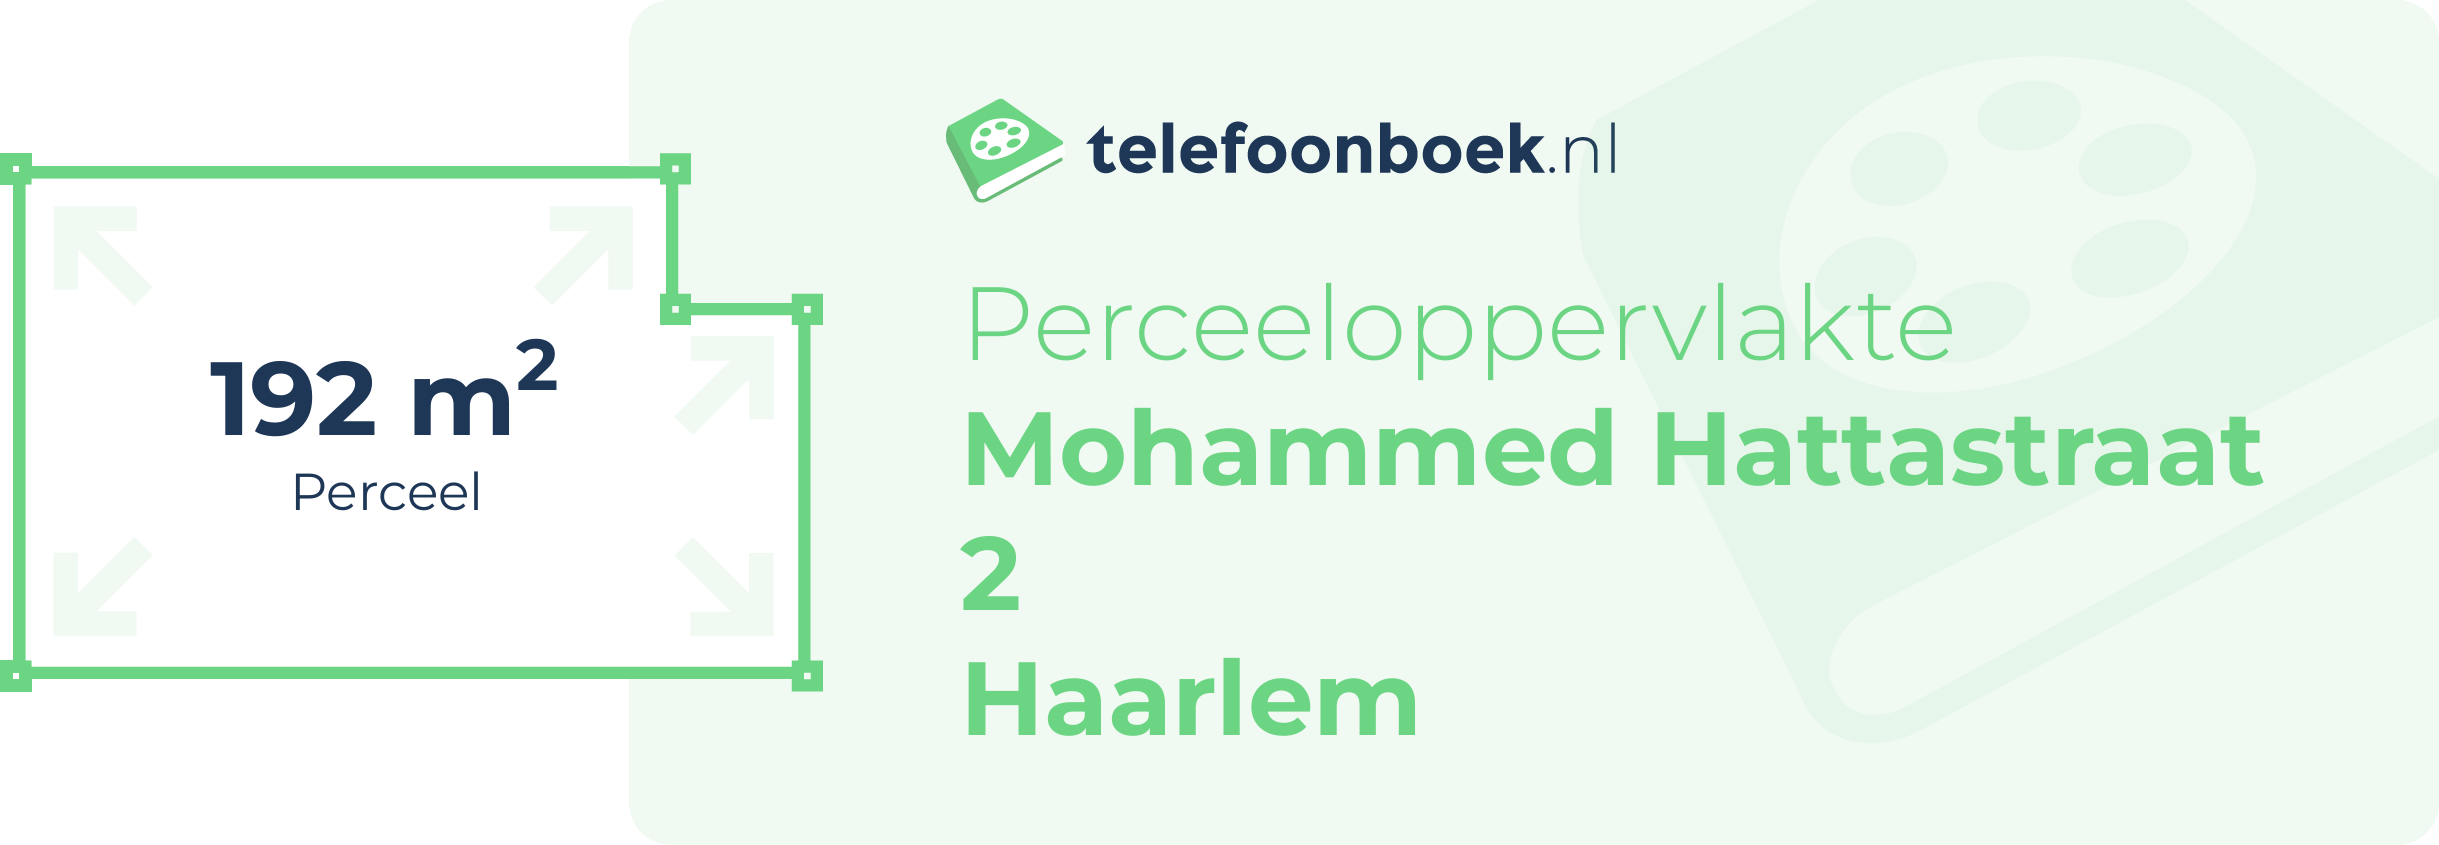 Perceeloppervlakte Mohammed Hattastraat 2 Haarlem